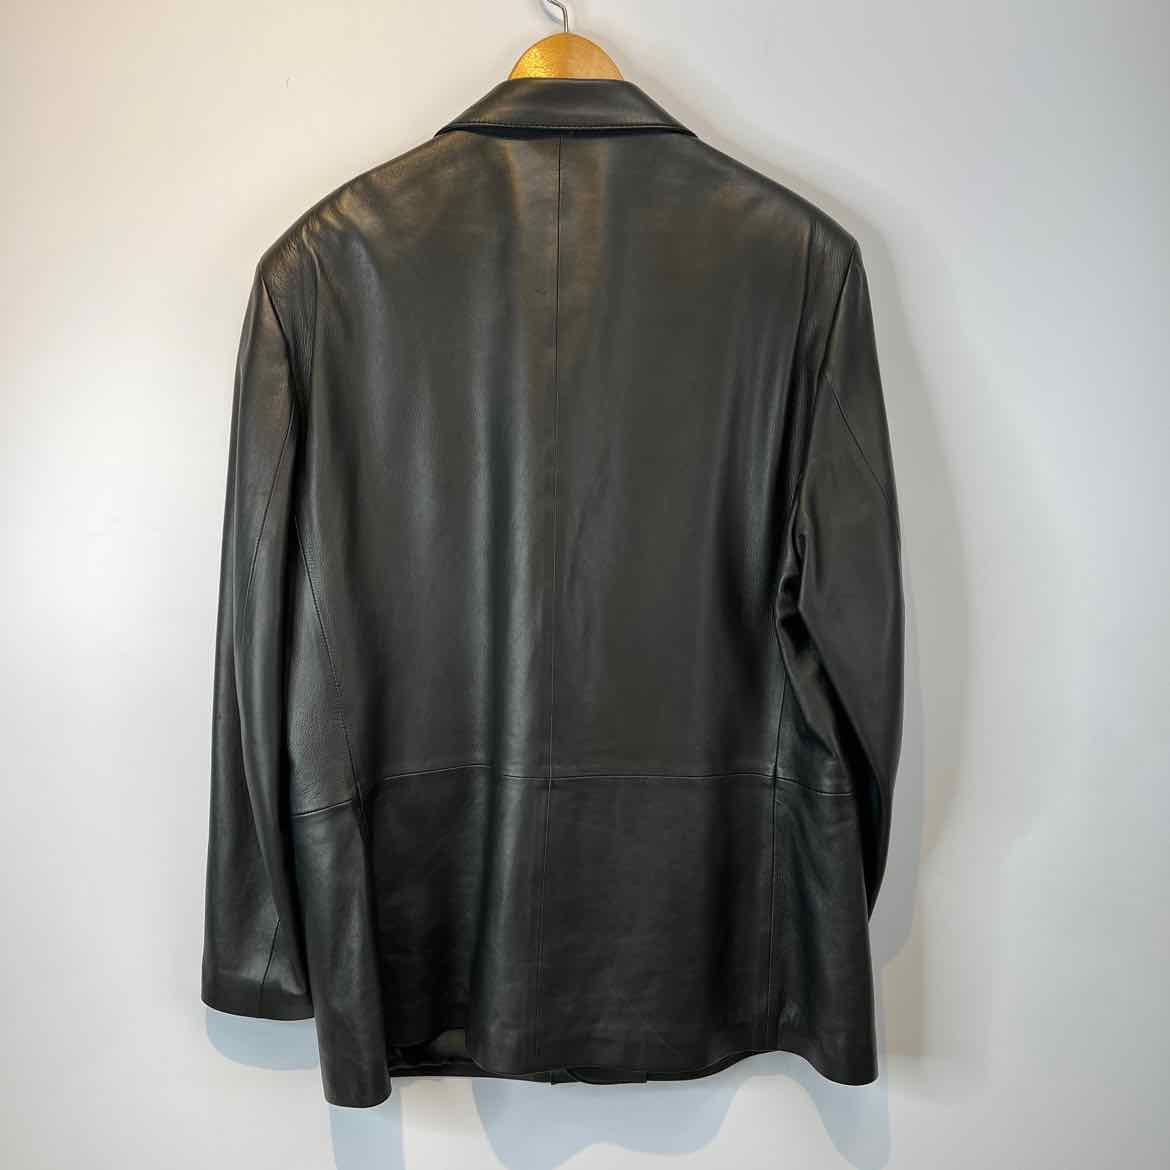 SOLSANA Jacket Black / XL SOLSANA Mens Size XL Black Leather Jacket